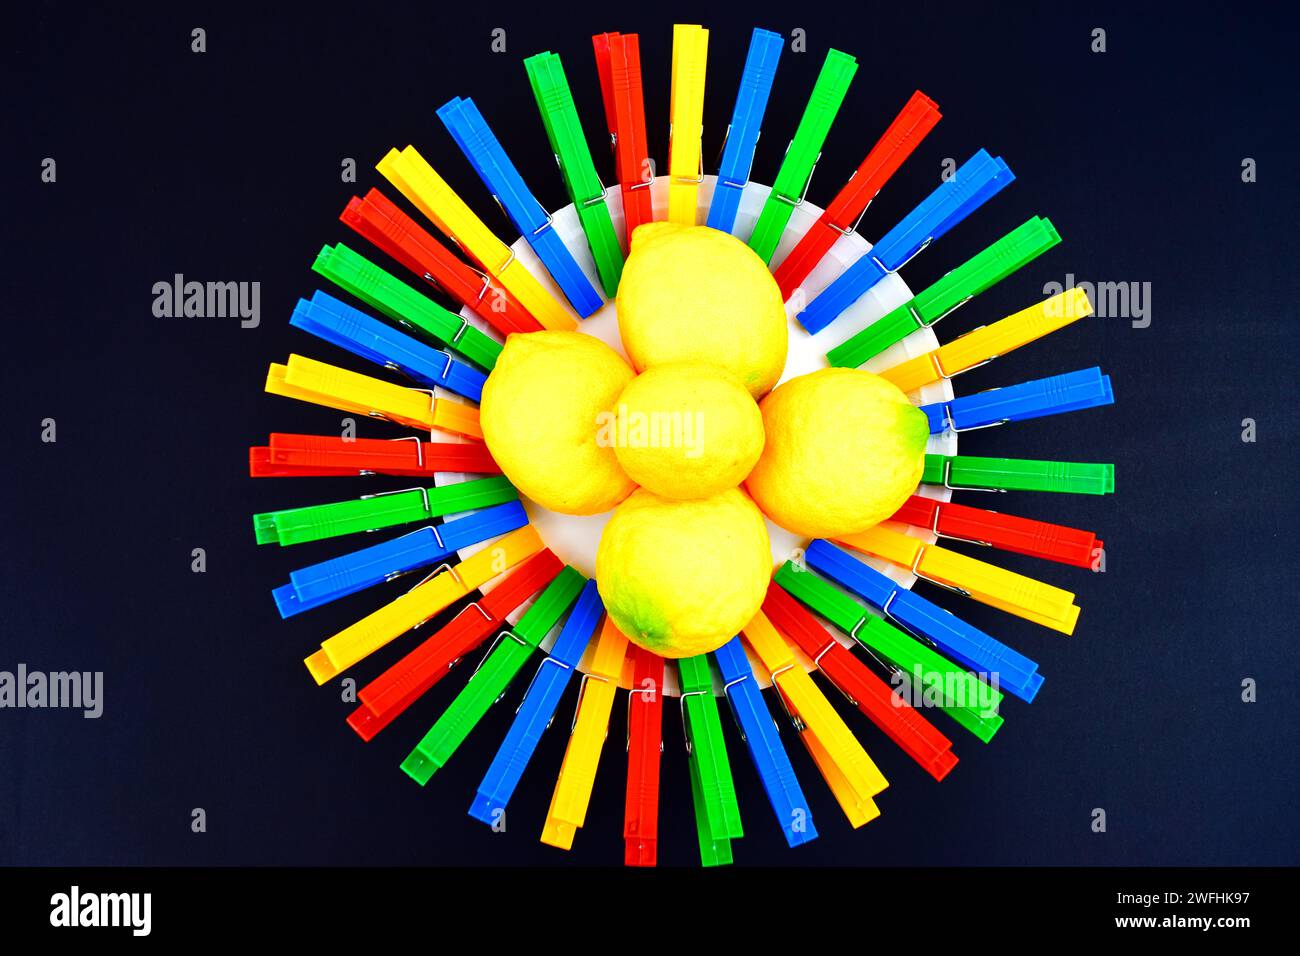 Un cerchio rotondo, fatto di clothespins di plastica colorata e una pila di limoni freschi seduti al centro. Foto Stock